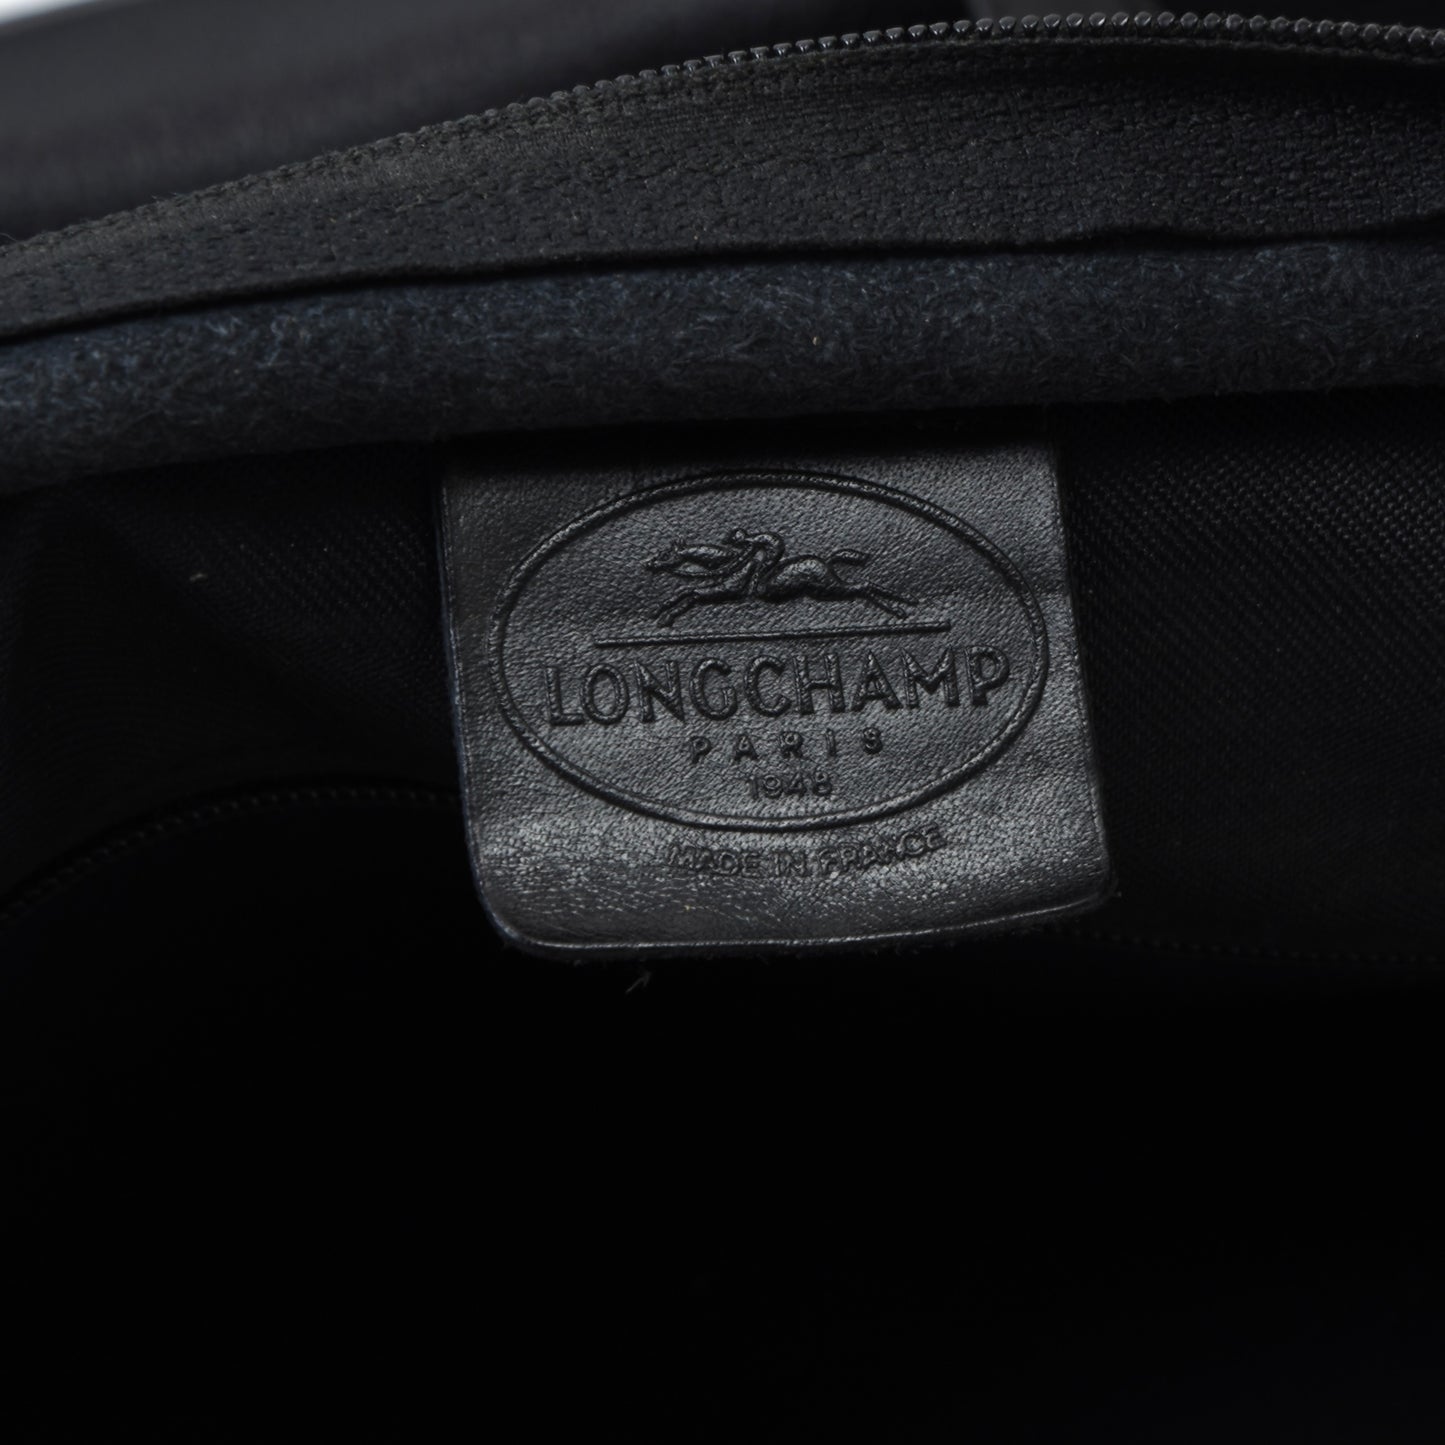 Longchamp Paris Leather Shopper Bag - Black